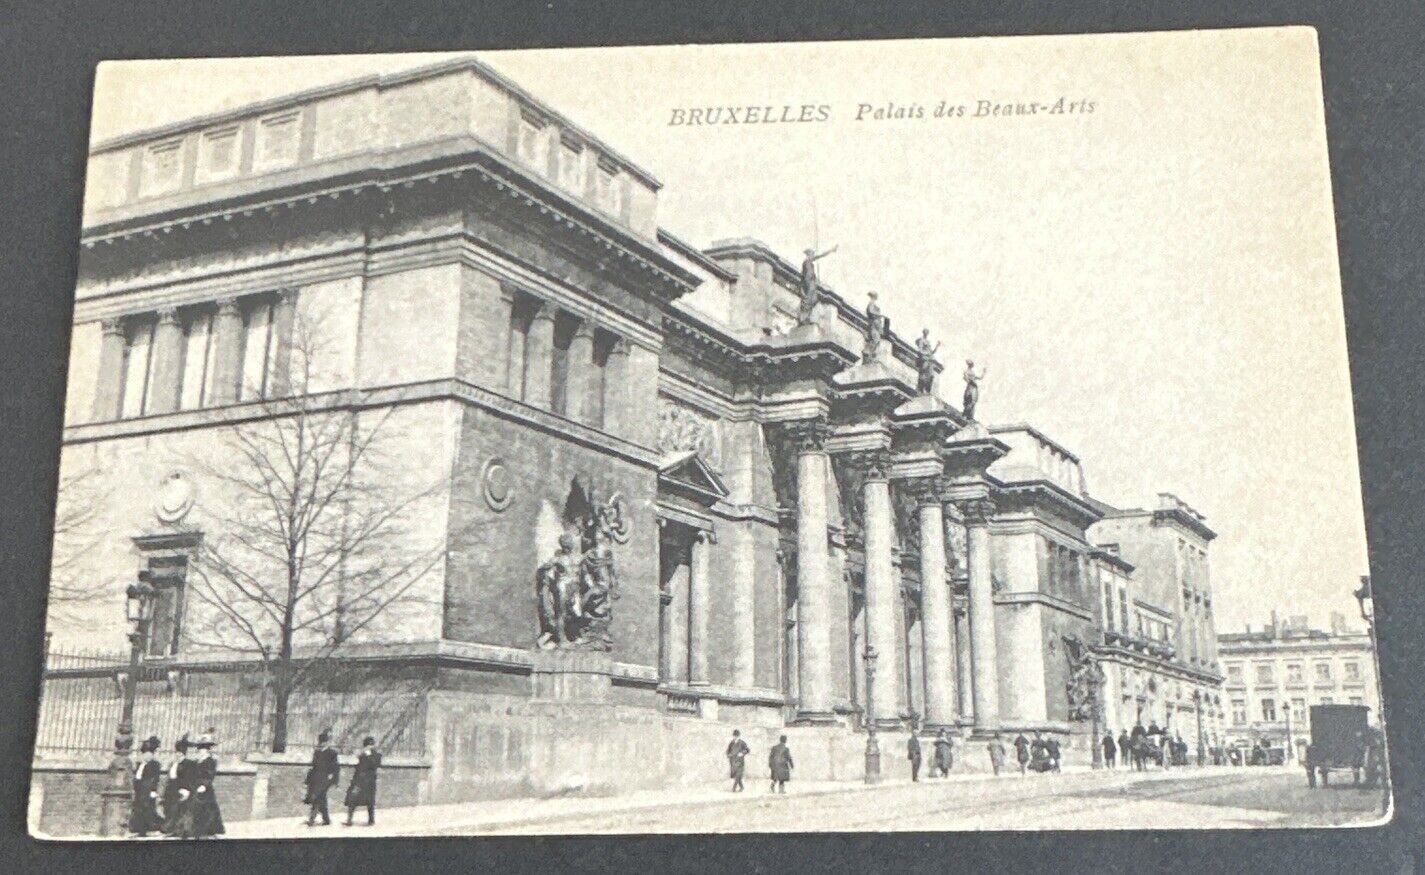 Postcard: BRUXELLES Palais des Beaux-Arts(Palace of Fine Arts) Brussels, Belgium